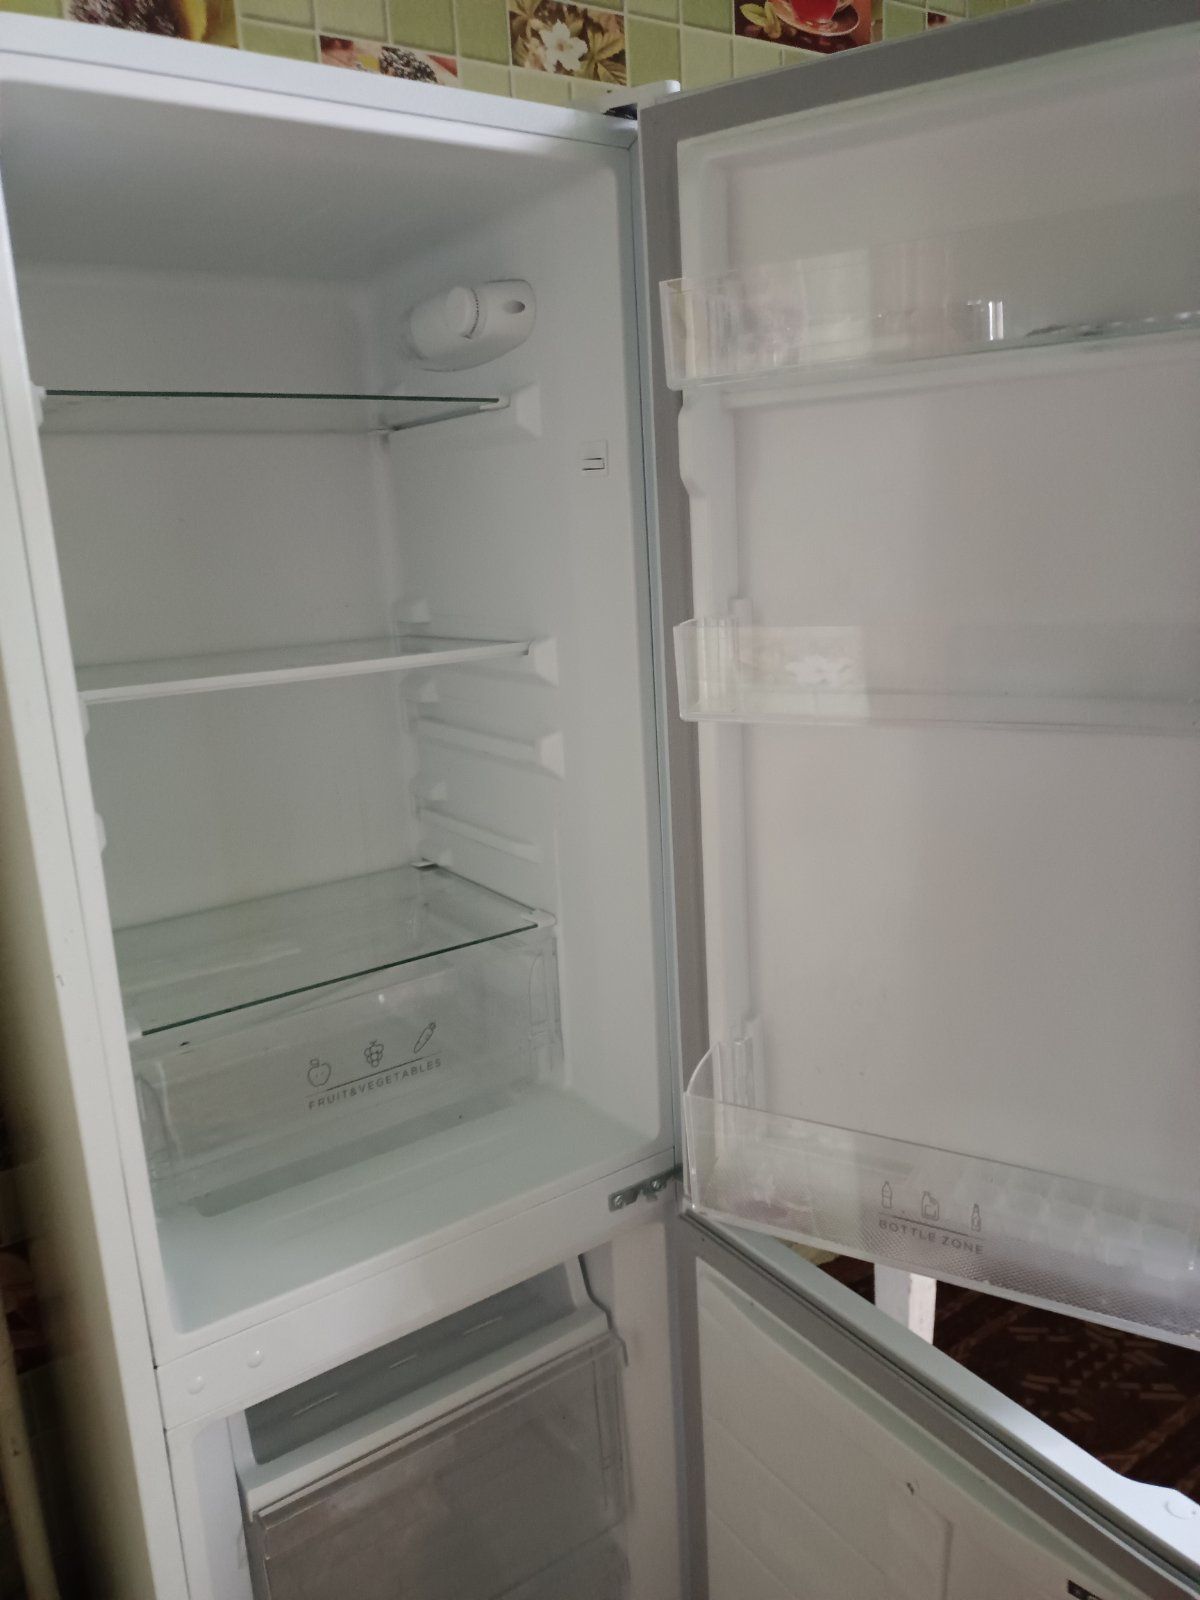 Продам холодильник Vivax в гарному стані